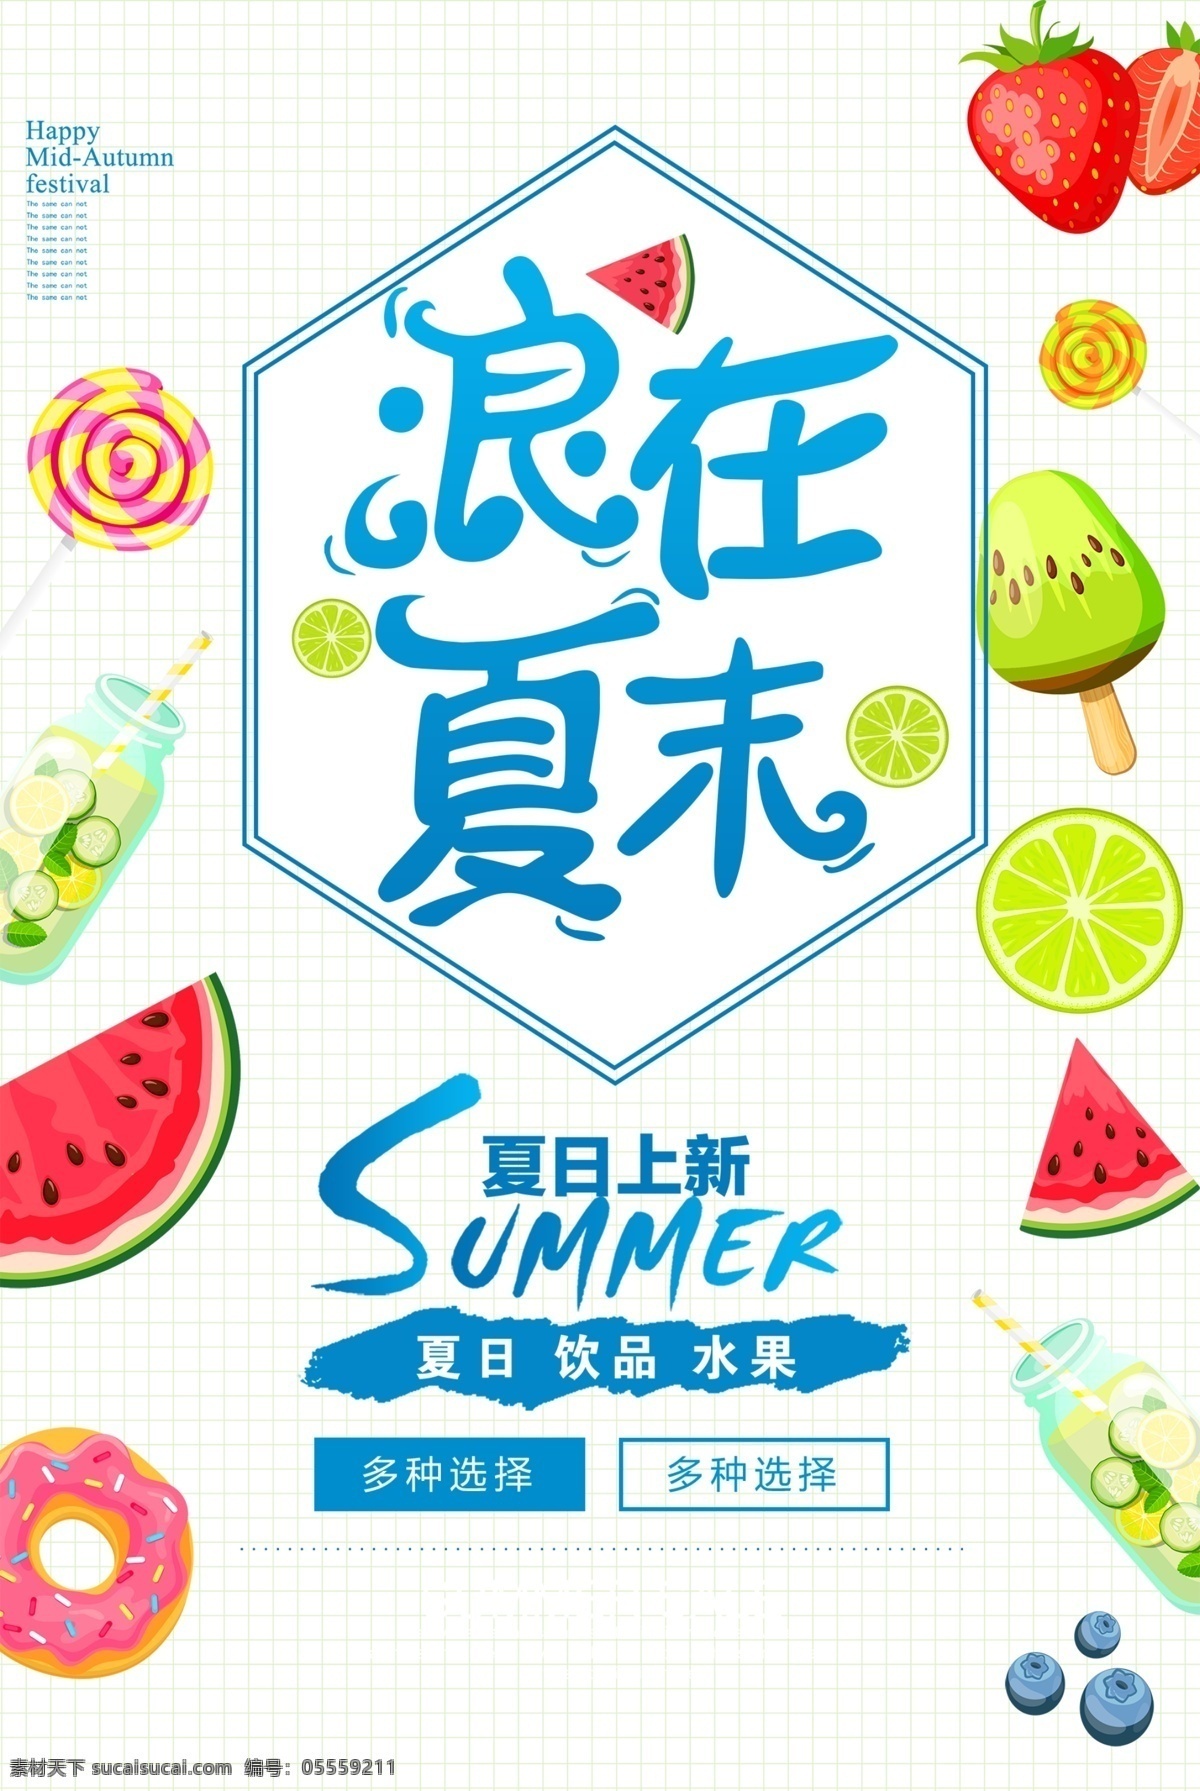 清凉一夏海报 水果海报 浪在夏末 叶鑫 西瓜 草莓 促销海报